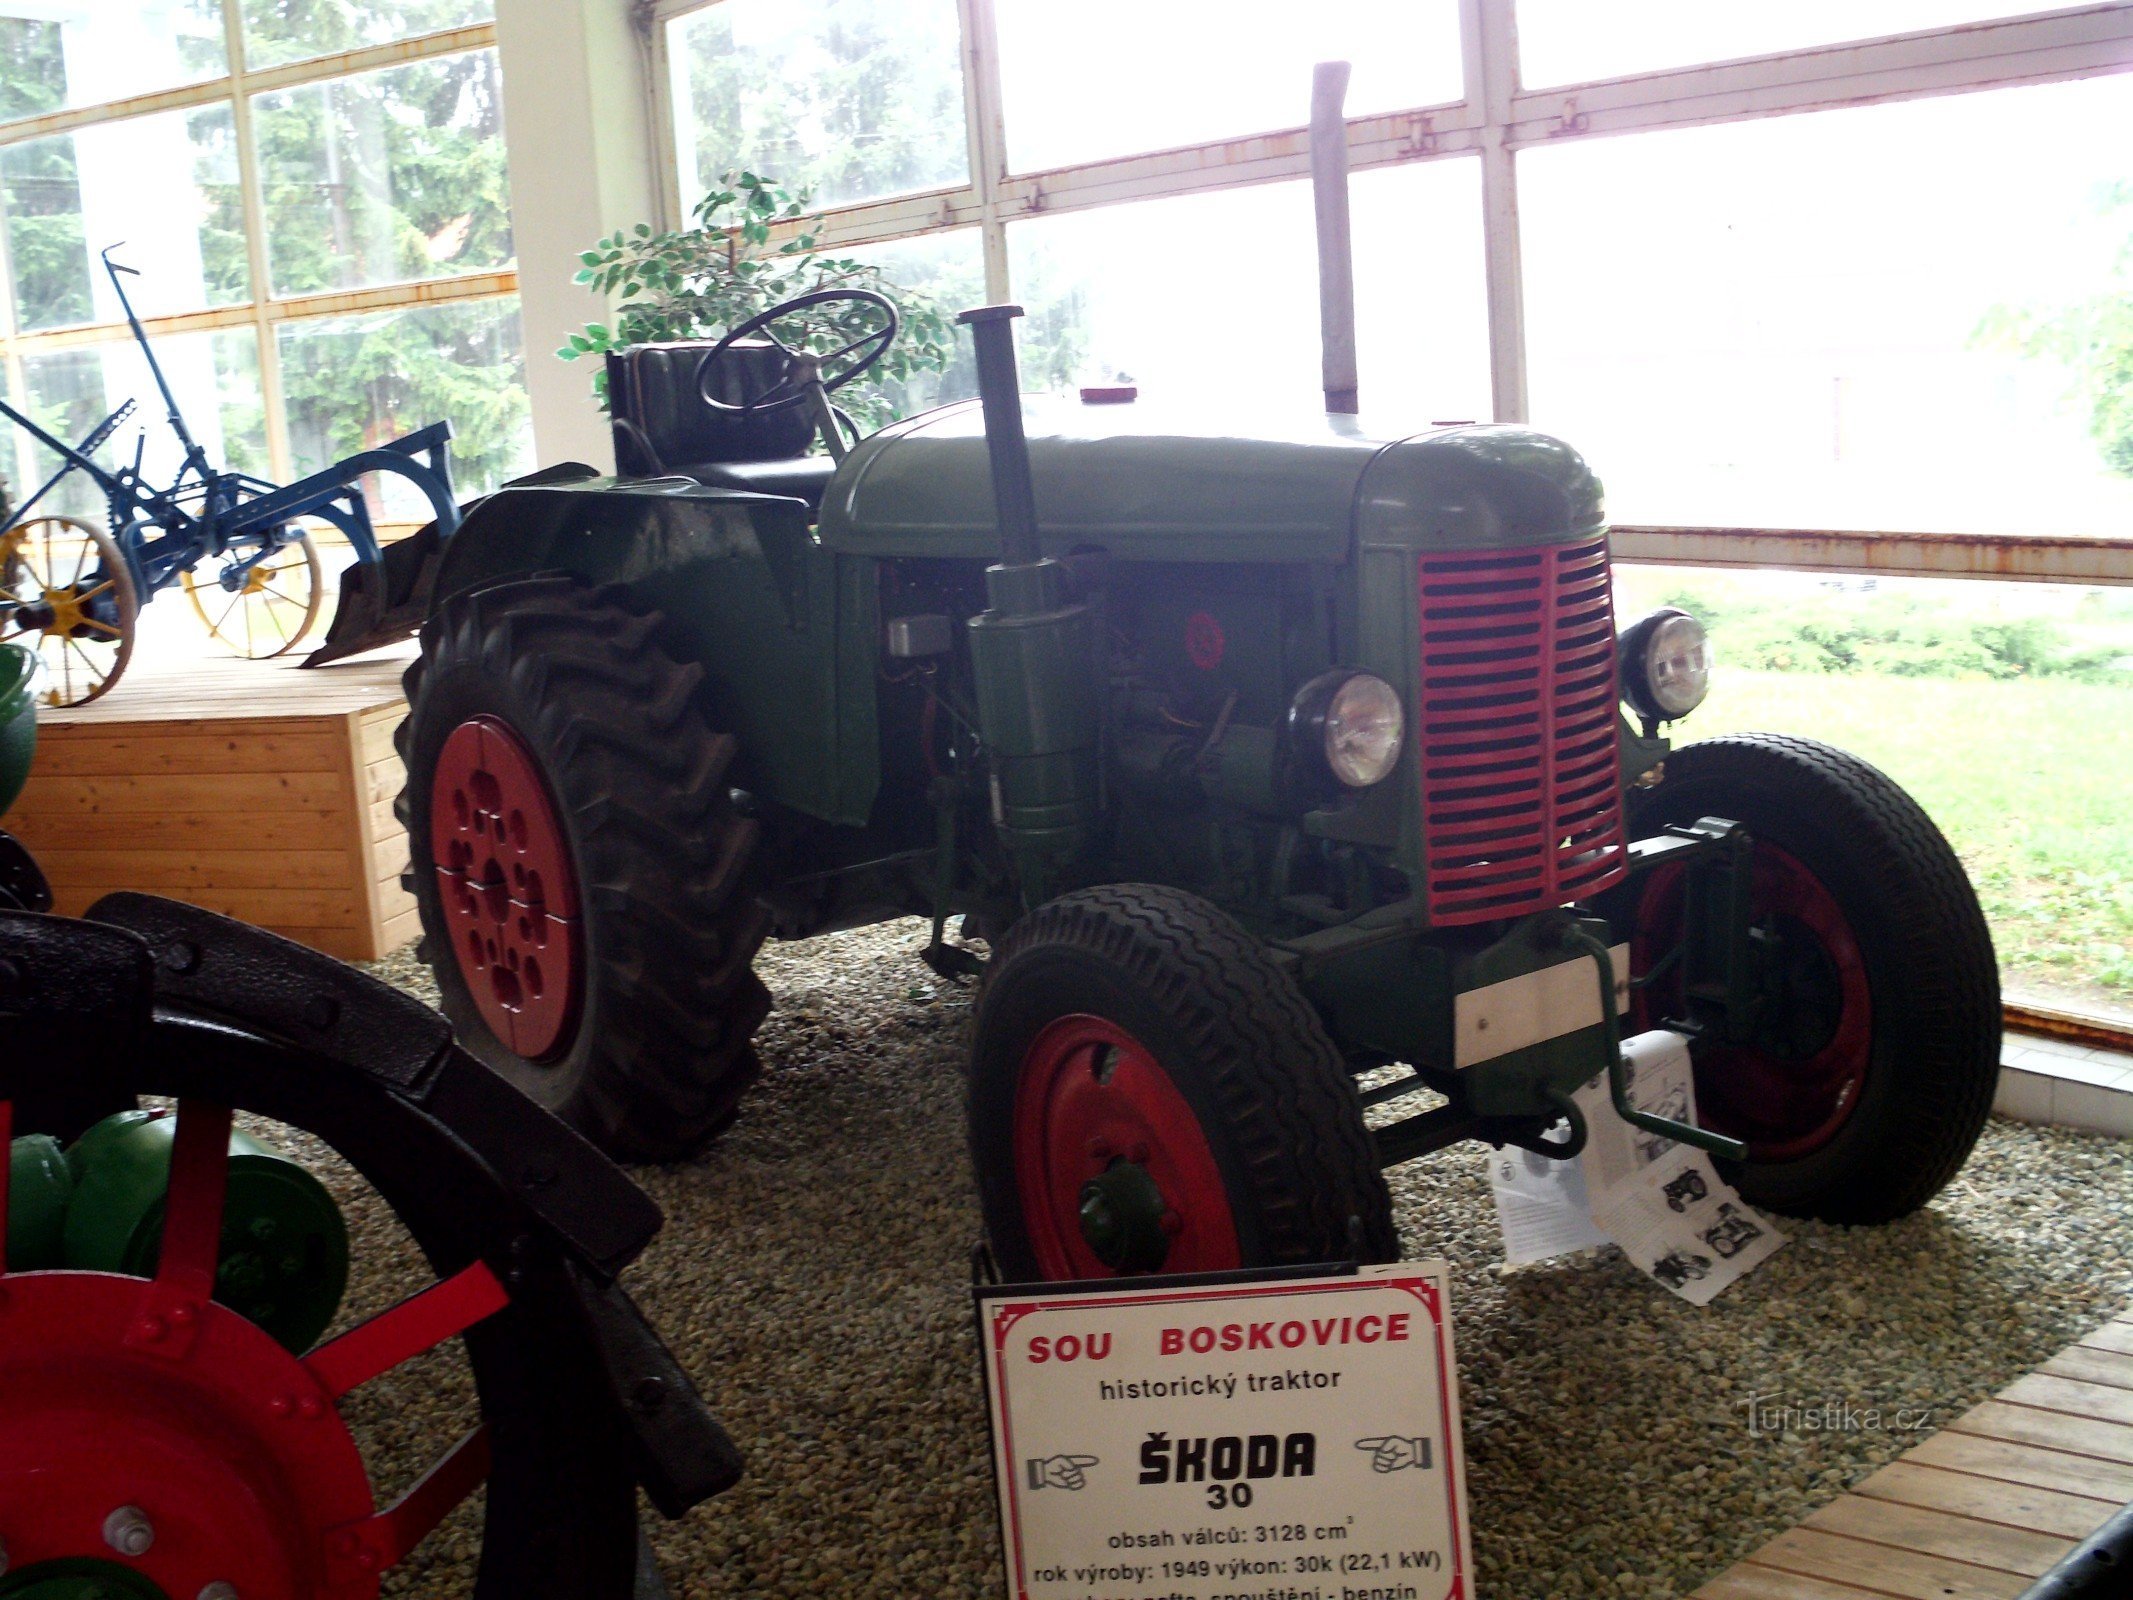 Ciągnik Škoda 30 był ważny podczas kolektywizacji rolnictwa po II wojnie światowej. wojna światowa.